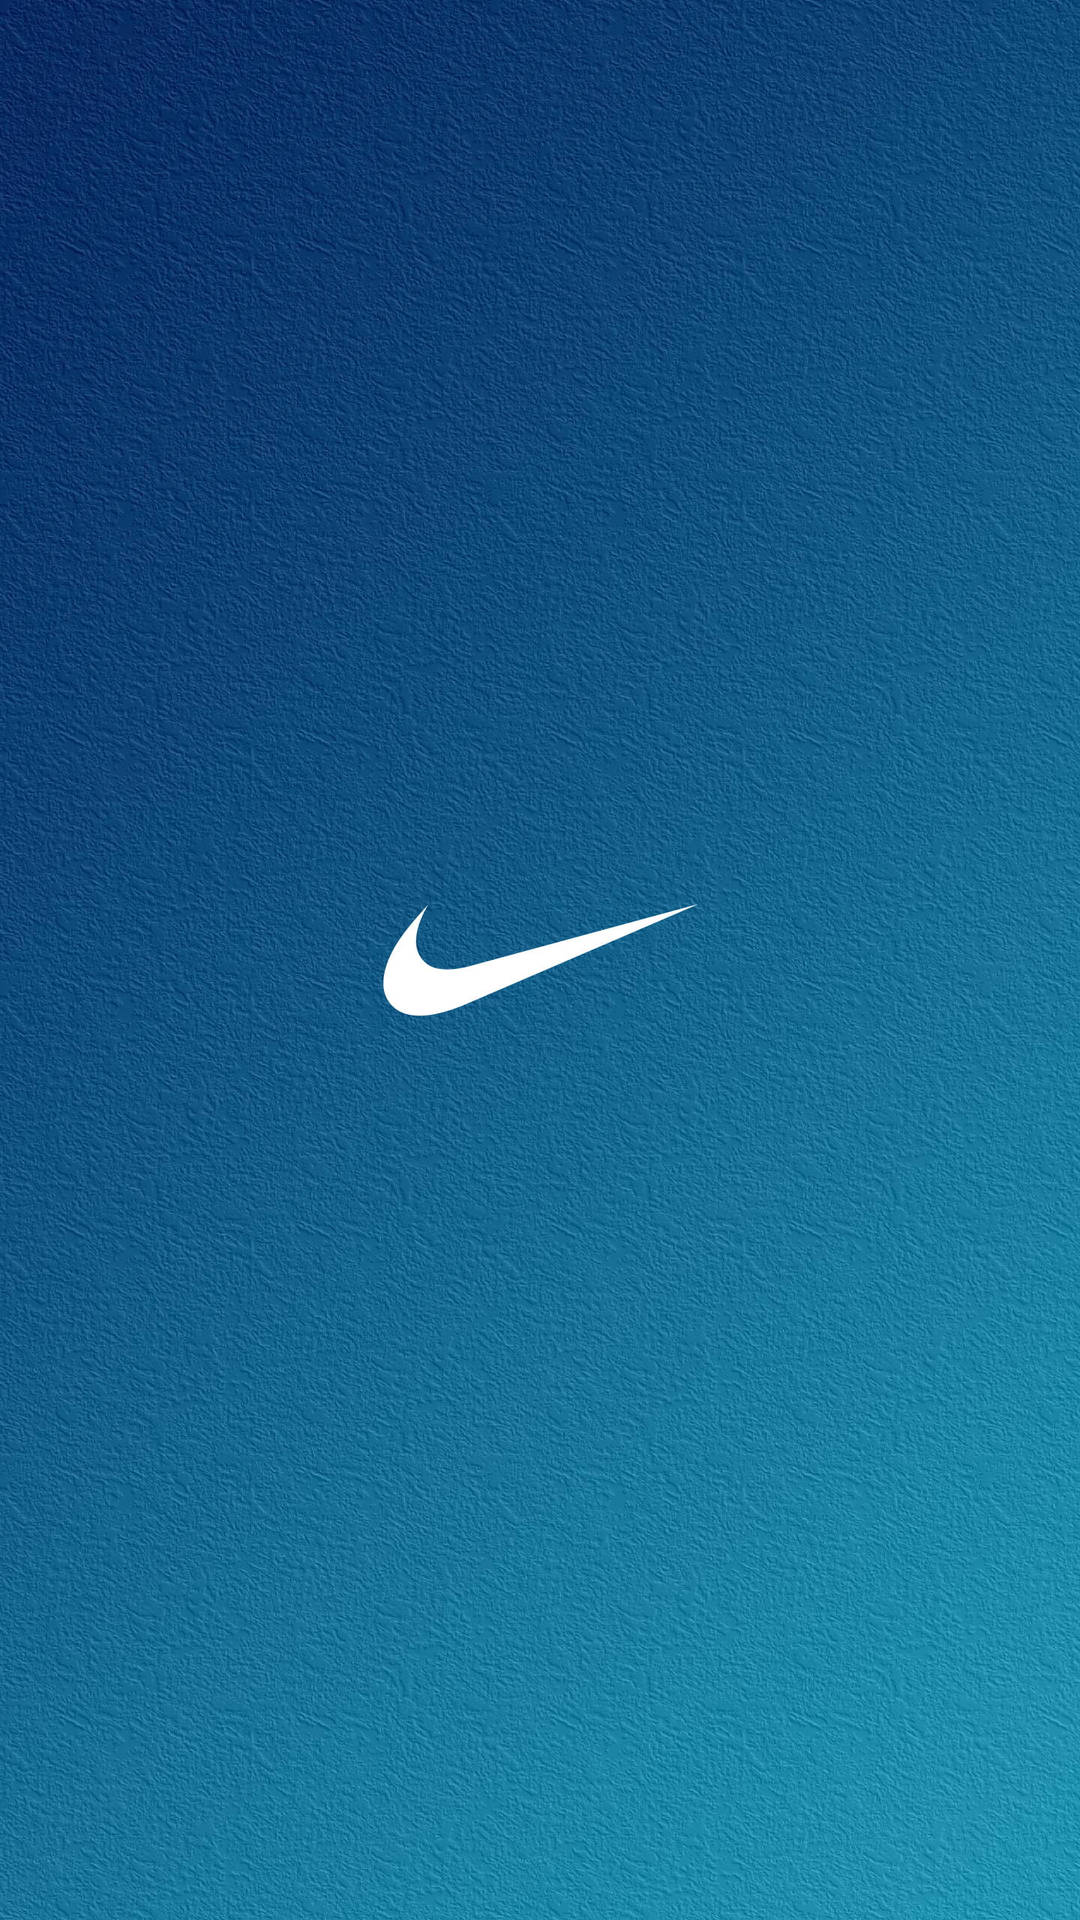 Nike Gradient Blue Basic Wallpaper